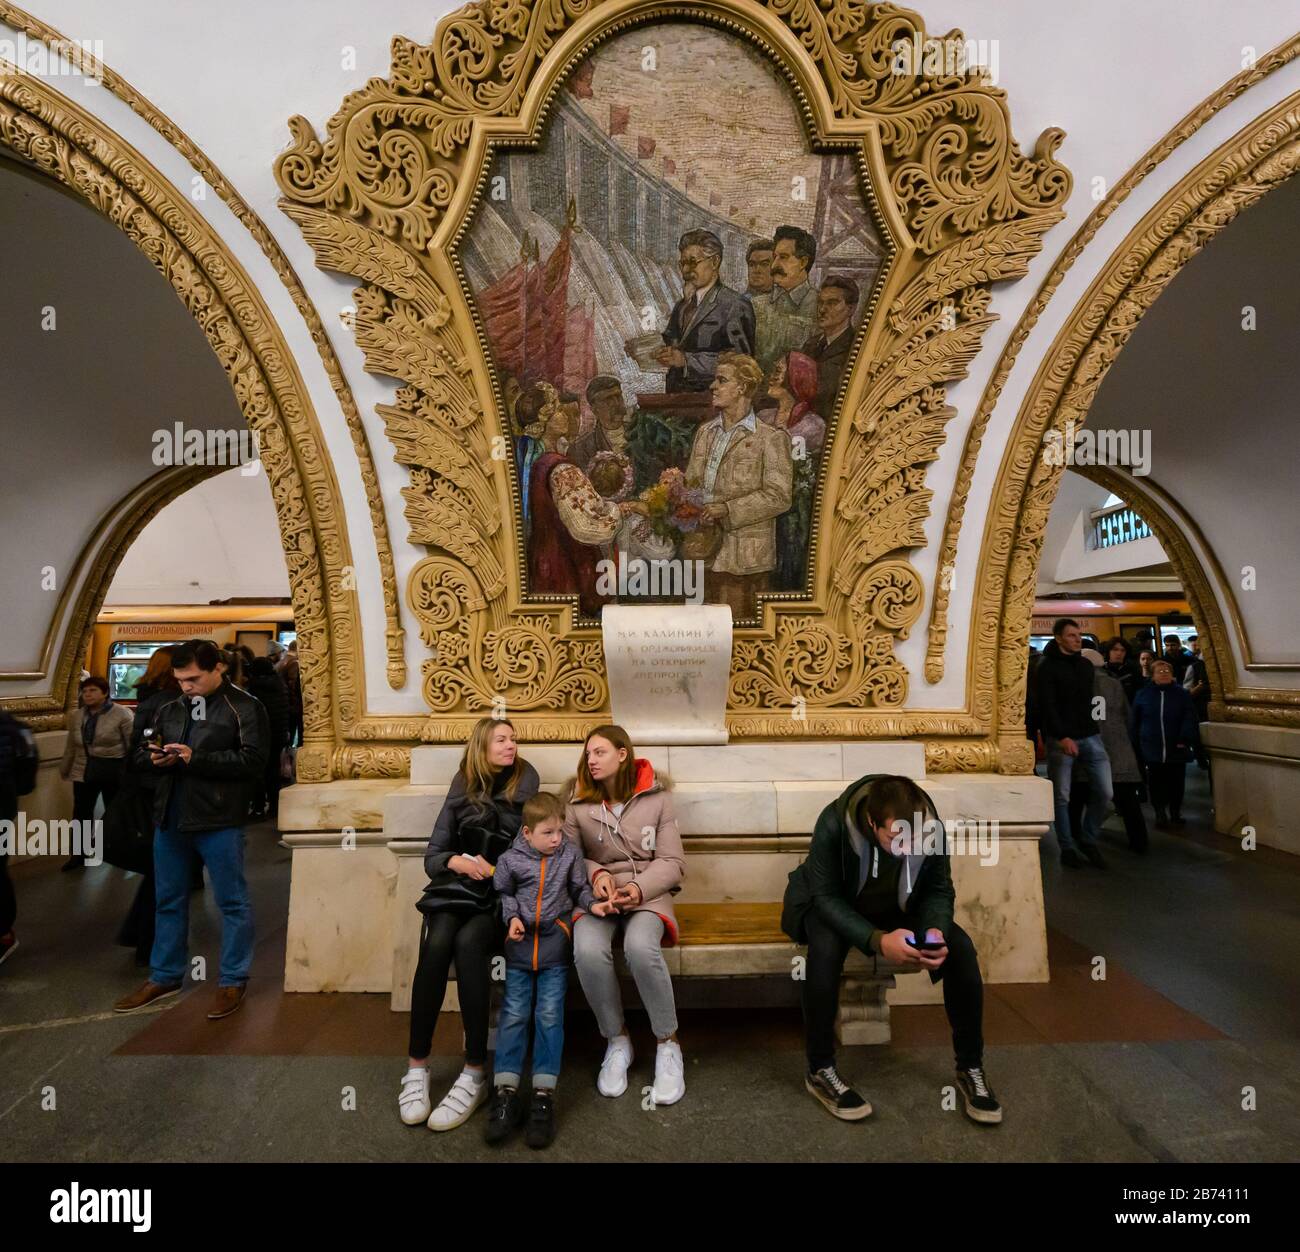 Ornato mosaico opere d'arte decorazione di A.V. Myzin celebra l'unità russo-Ucraina, stazione della metropolitana Kiyevskaya, metropolitana o metropolitana di Mosca, Russia Foto Stock